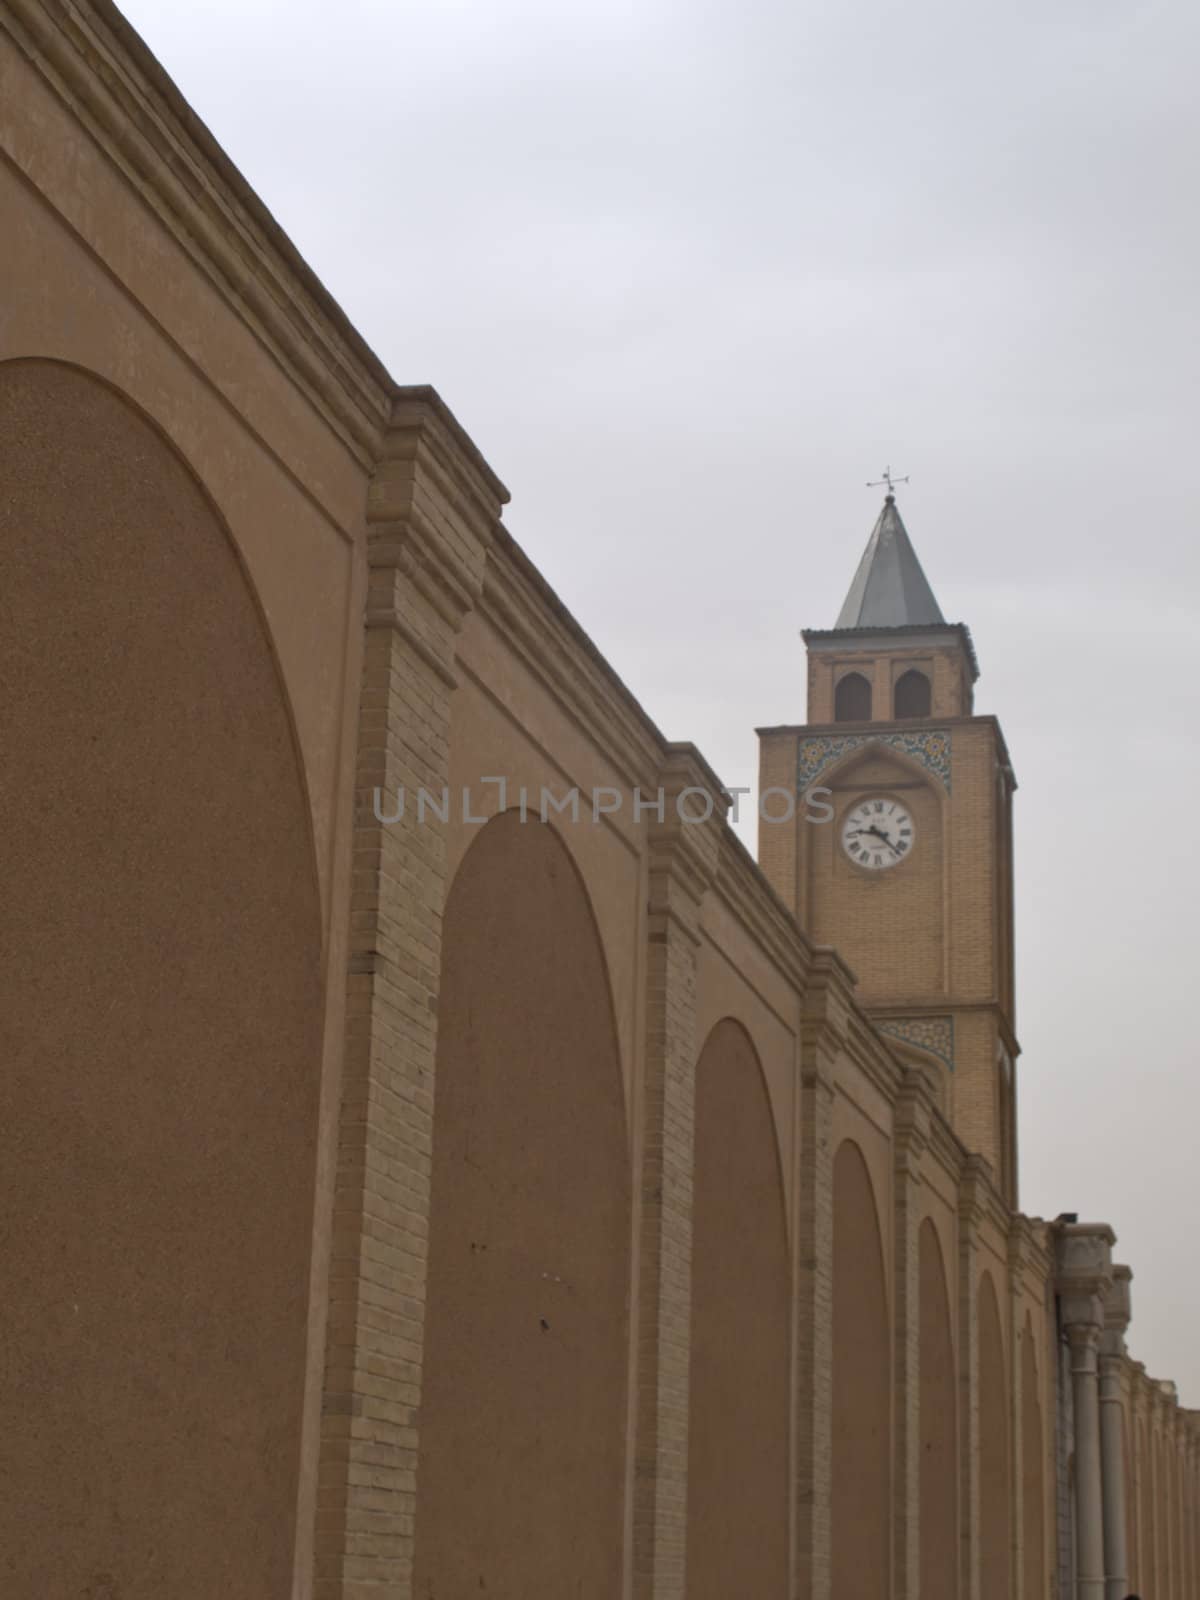 Vank Cathedral clock tower and brick wall in Isfahan Iran